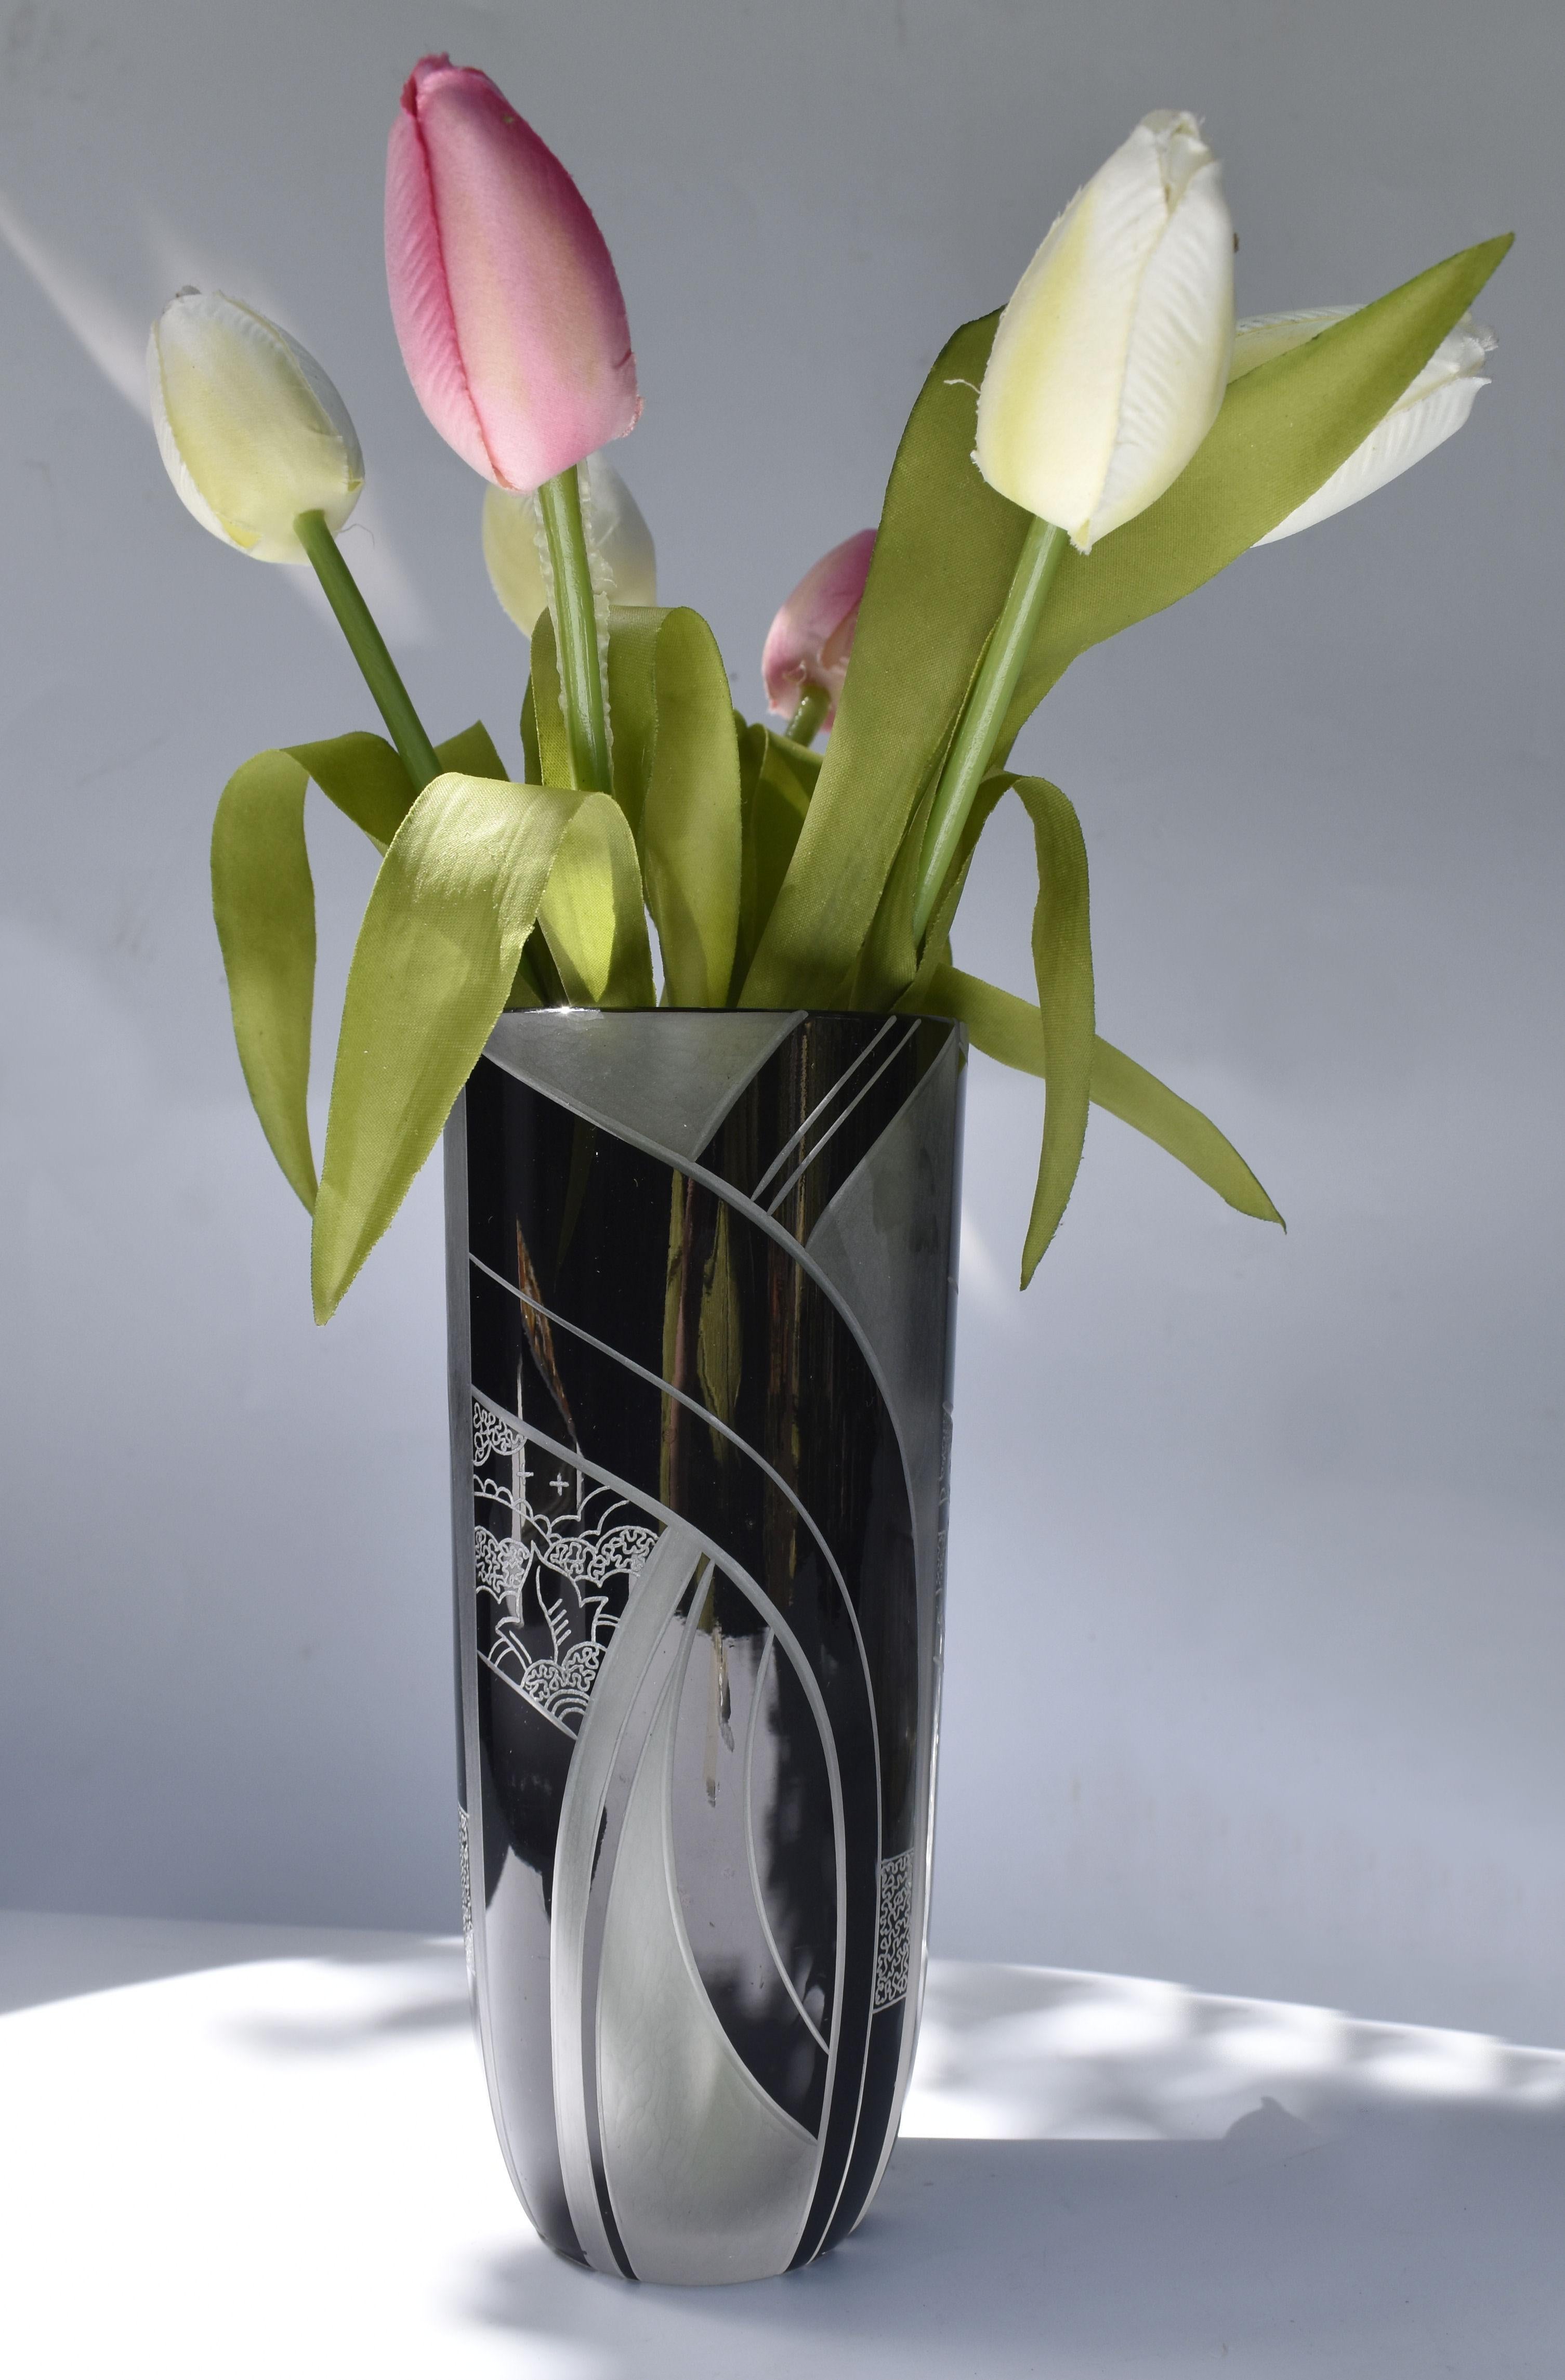 D'une hauteur de 20 cm, nous vous proposons ce vase exceptionnel en verre Art déco des années 1930, et quel joyau ! C'est d'une élégance magnifique, avec la plus glorieuse des décorations géométriques. Verre clair et dépoli, décoration en émail noir